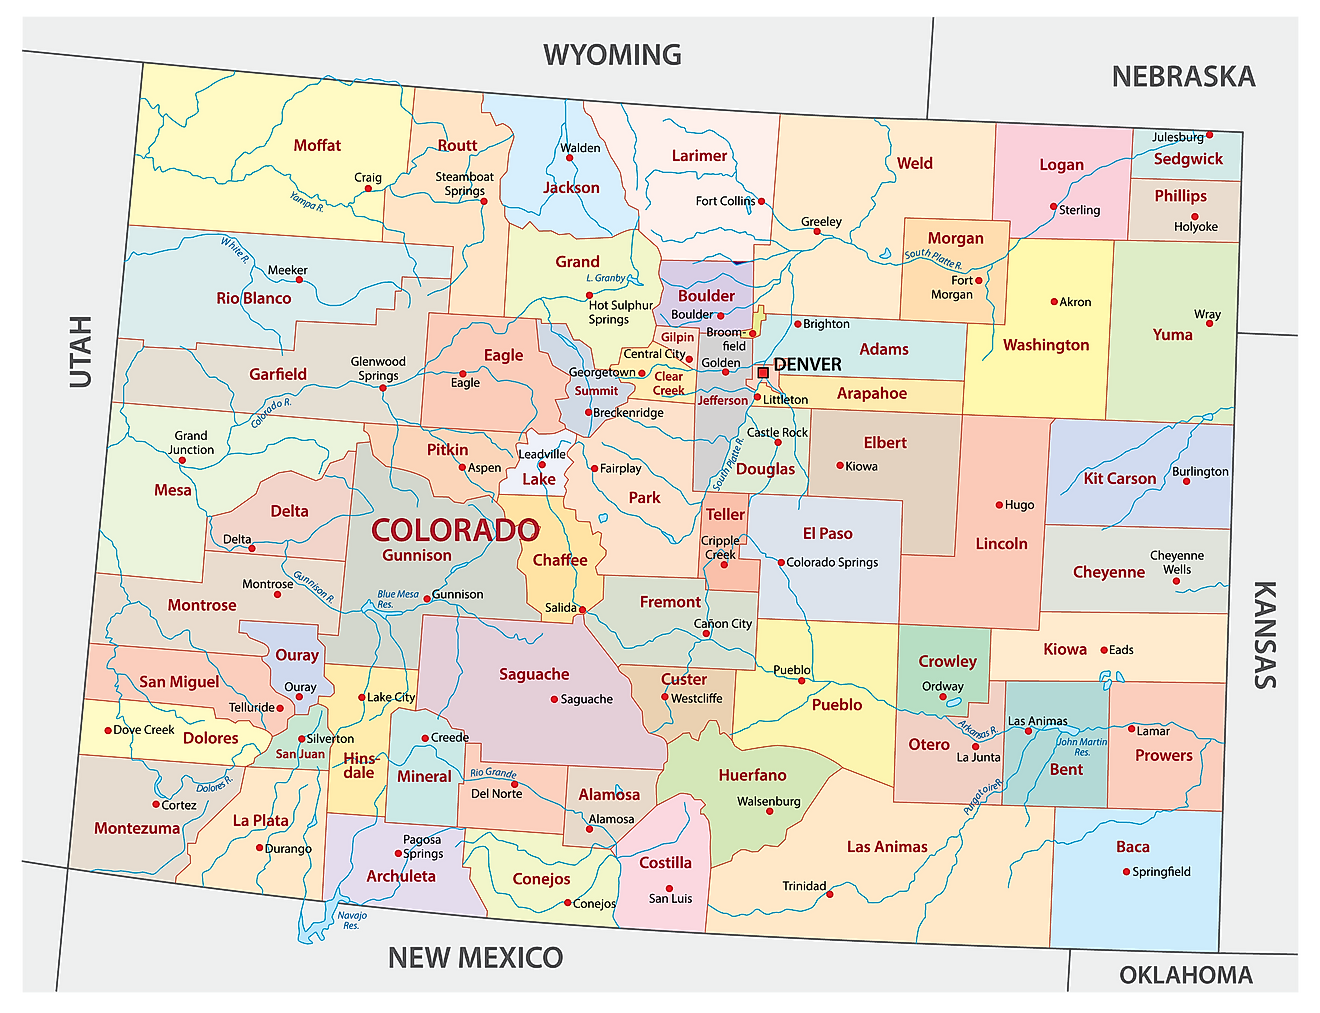 Mapa administrativo de Colorado que muestra sus 64 condados y la ciudad capital - Denver